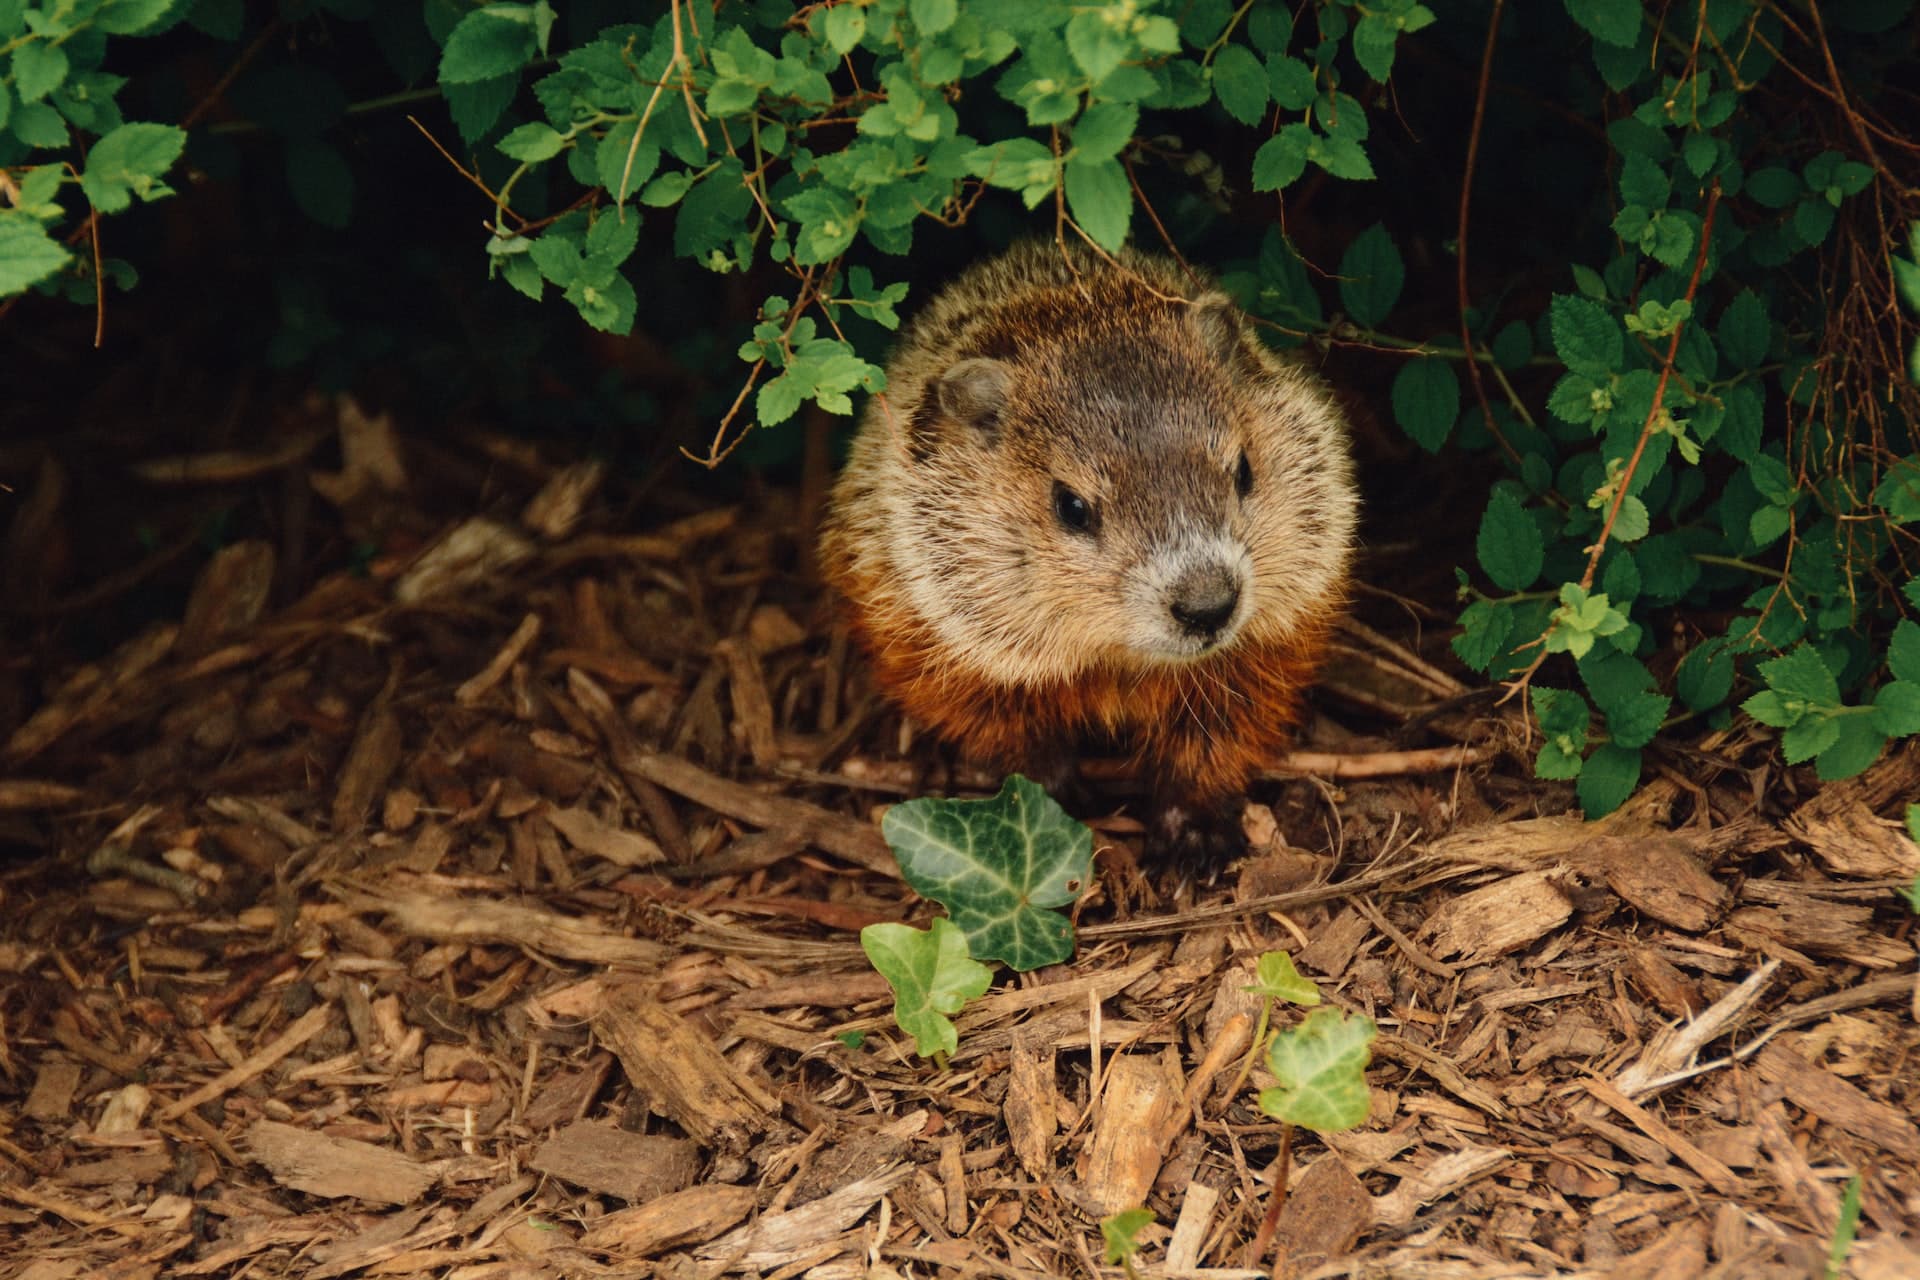 Groundhogs in kansas